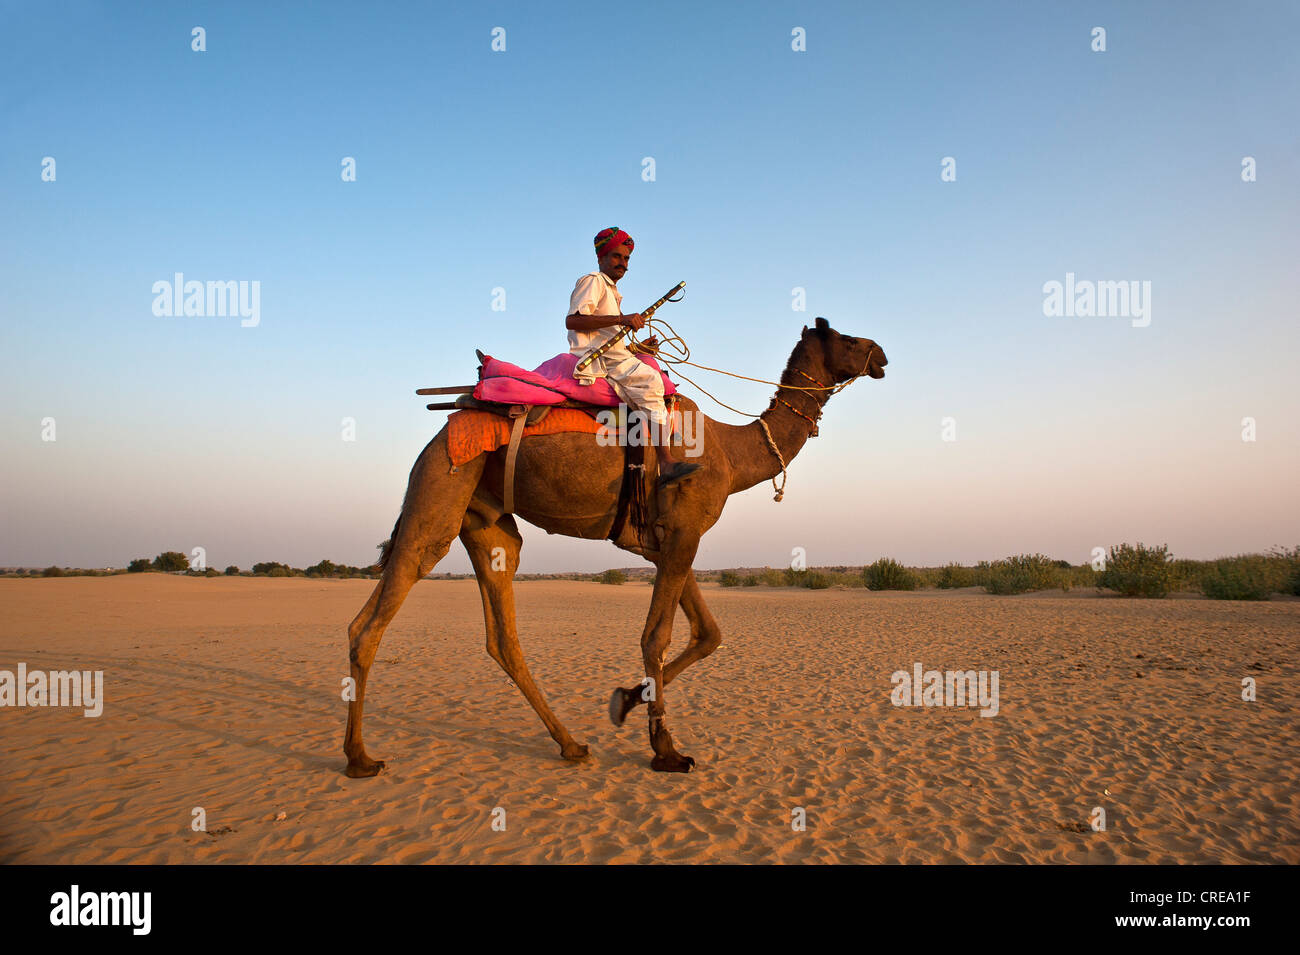 L'homme indien, vêtu d'un dhoti traditionnel et un turban équitation son chameau dans le désert, désert de Thar, Rajasthan, Inde, Asie Banque D'Images